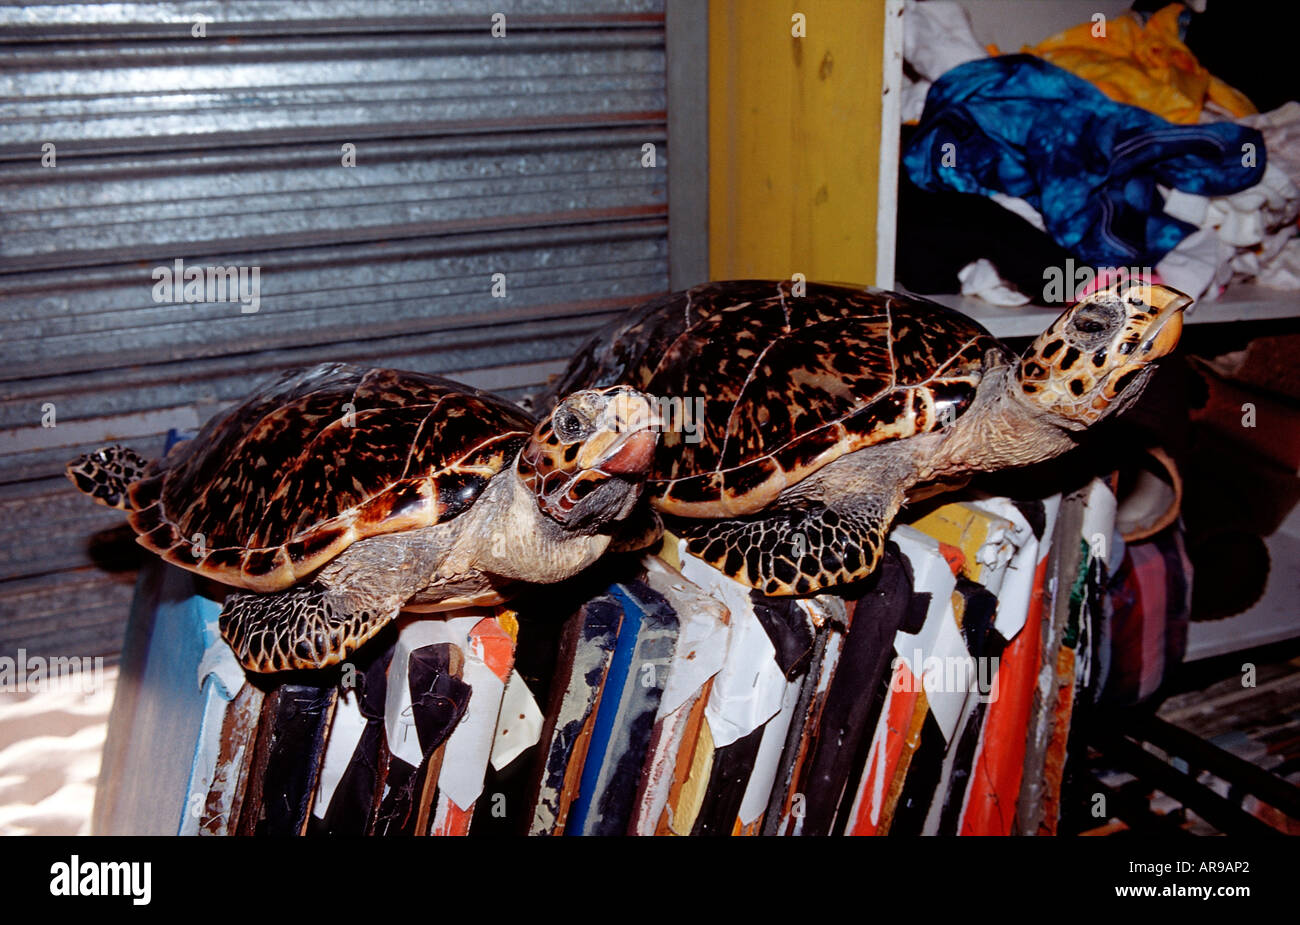 Zwei Meeresschildkröten als Souvenir Eretmochelys Imbricata Punta Cana Karibik Dominikanische Republik Stockfoto